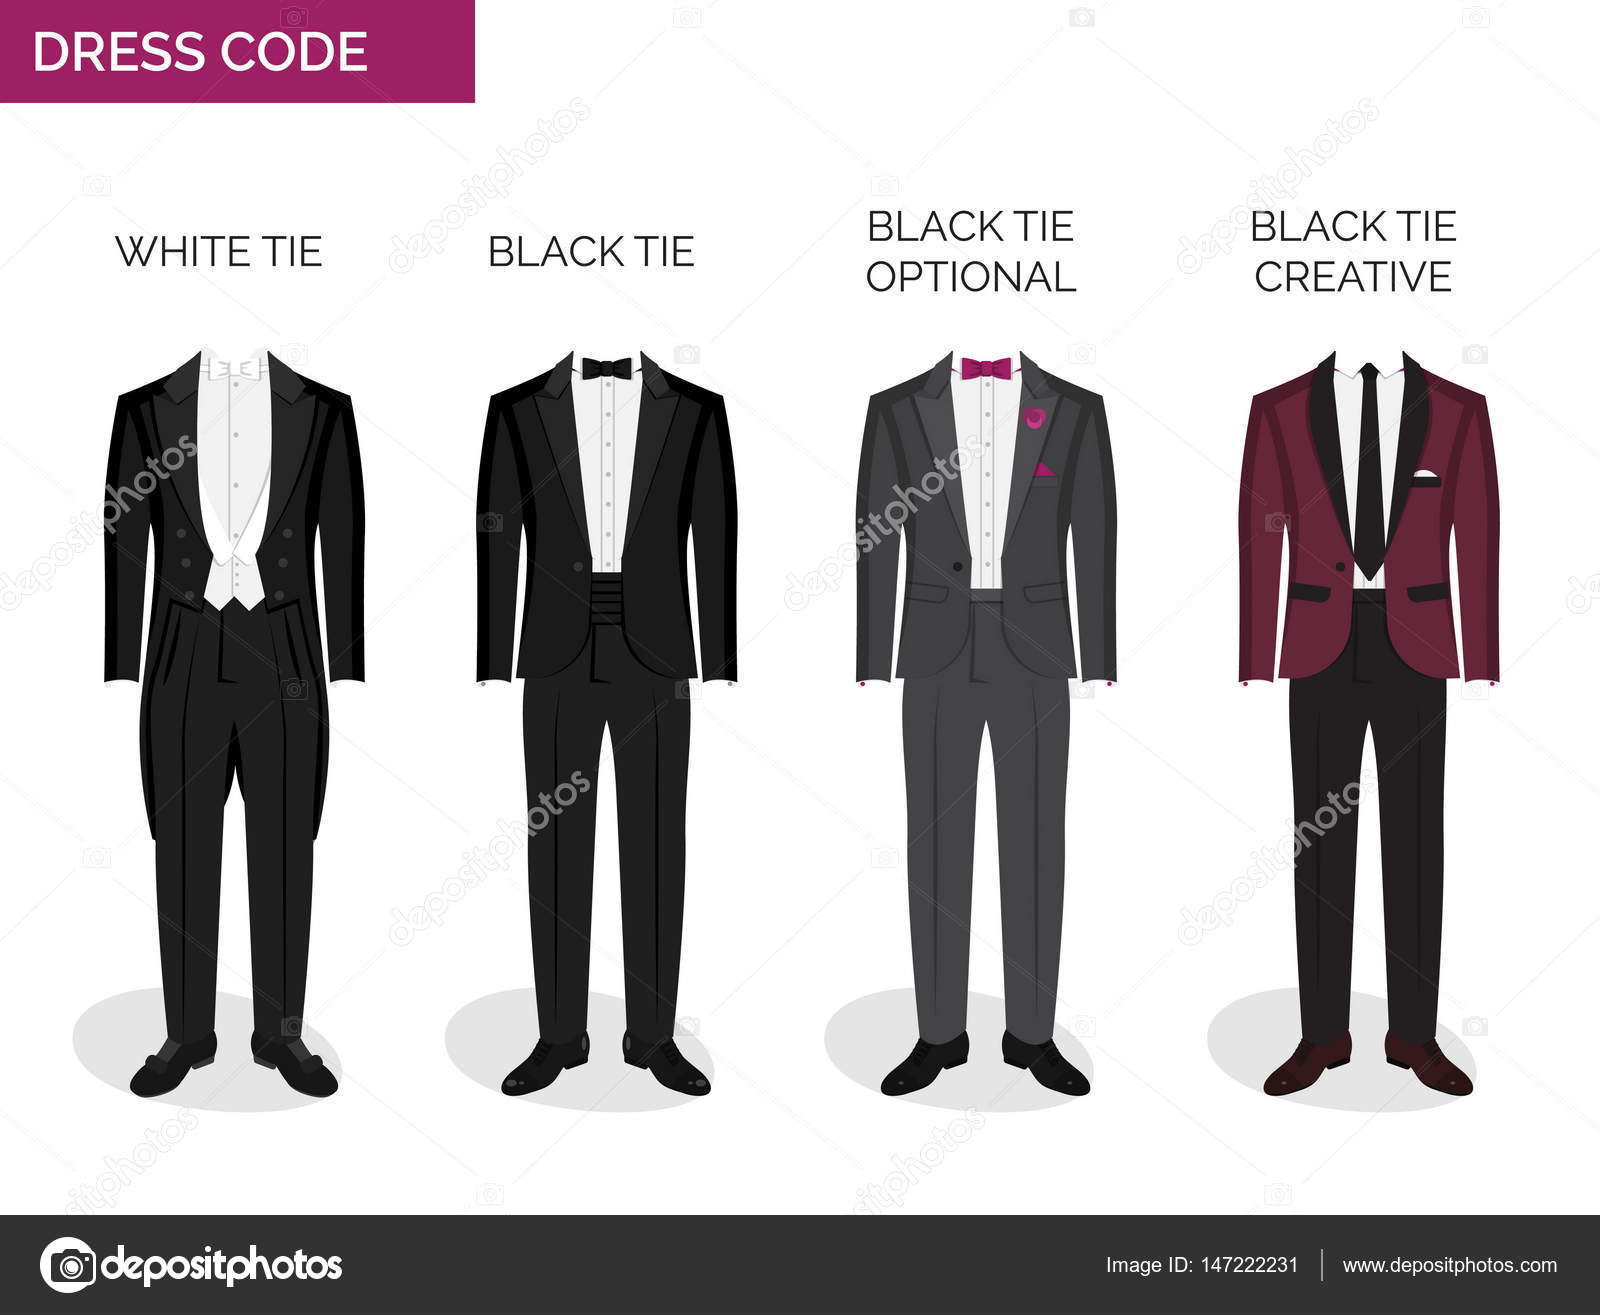 Guia de código de vestimenta formal para homens imagem vetorial de Medeja©  147222231